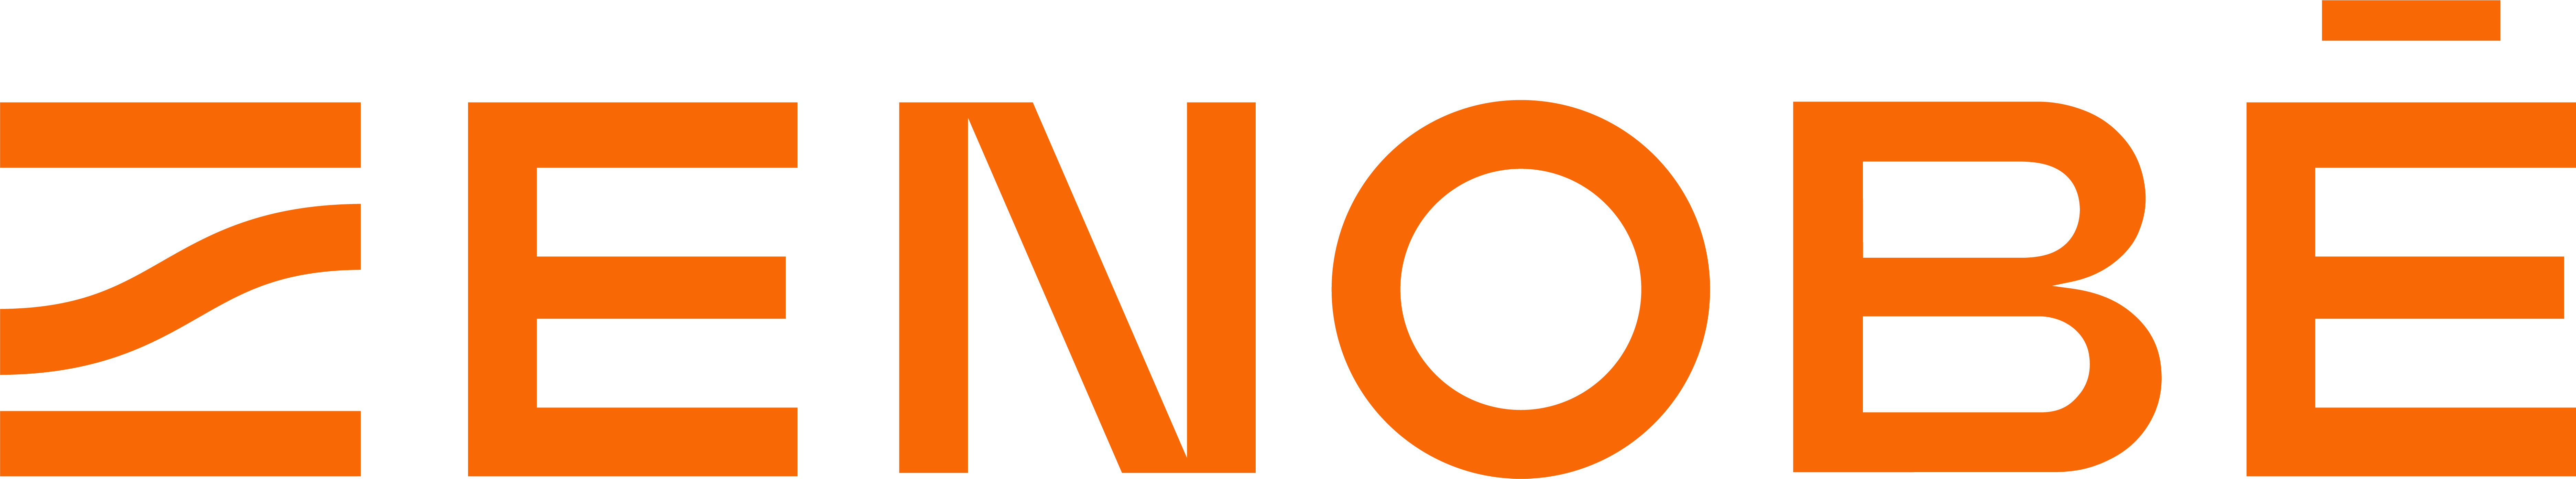 Linked logo for Zenobe Energy